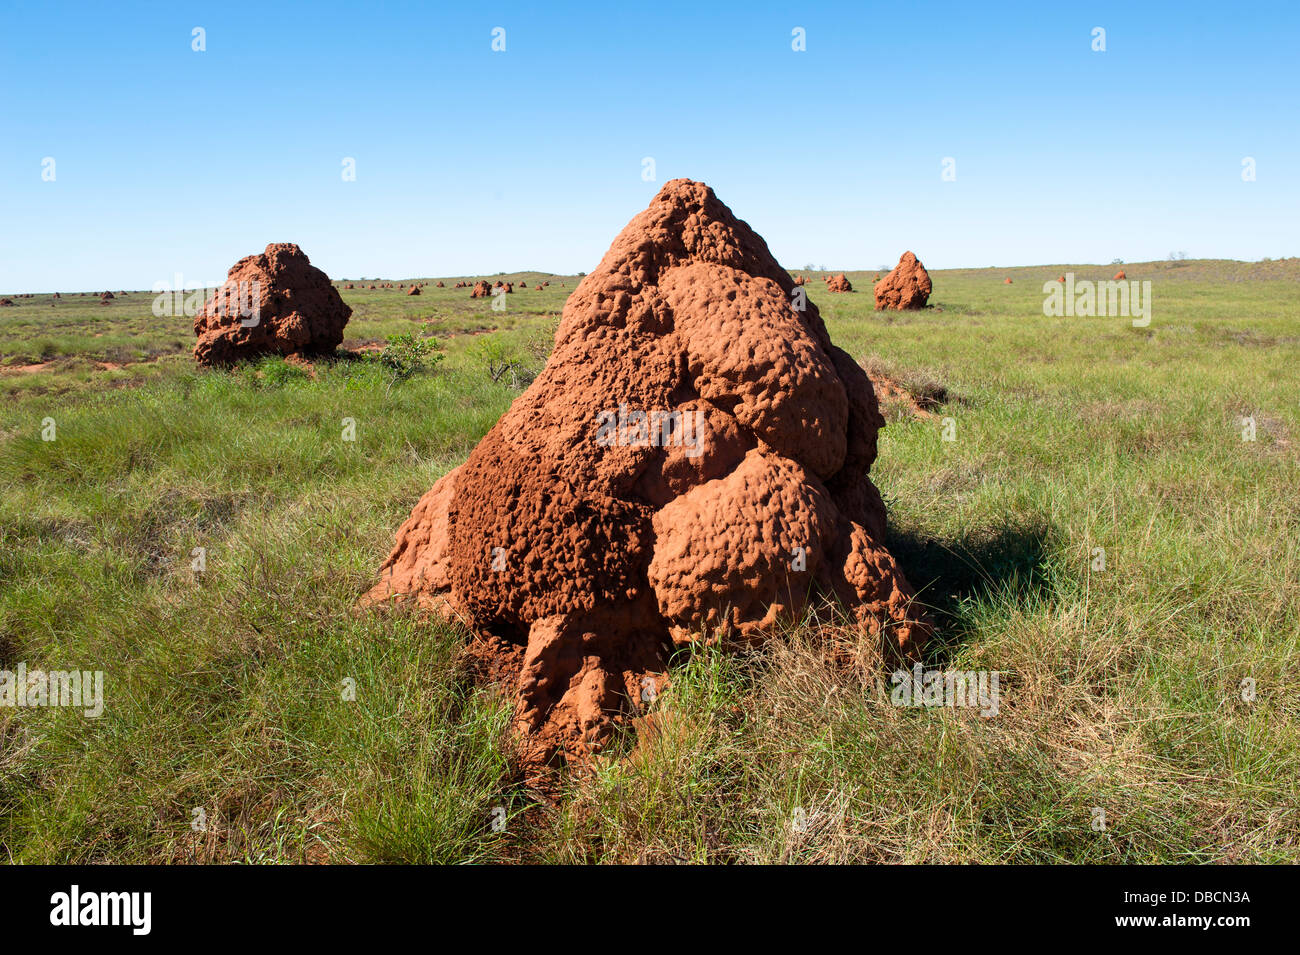 Las termitas en la 'Ciudad de las termitas' en la costa promontorios de Onslow, Australia Occidental Foto de stock